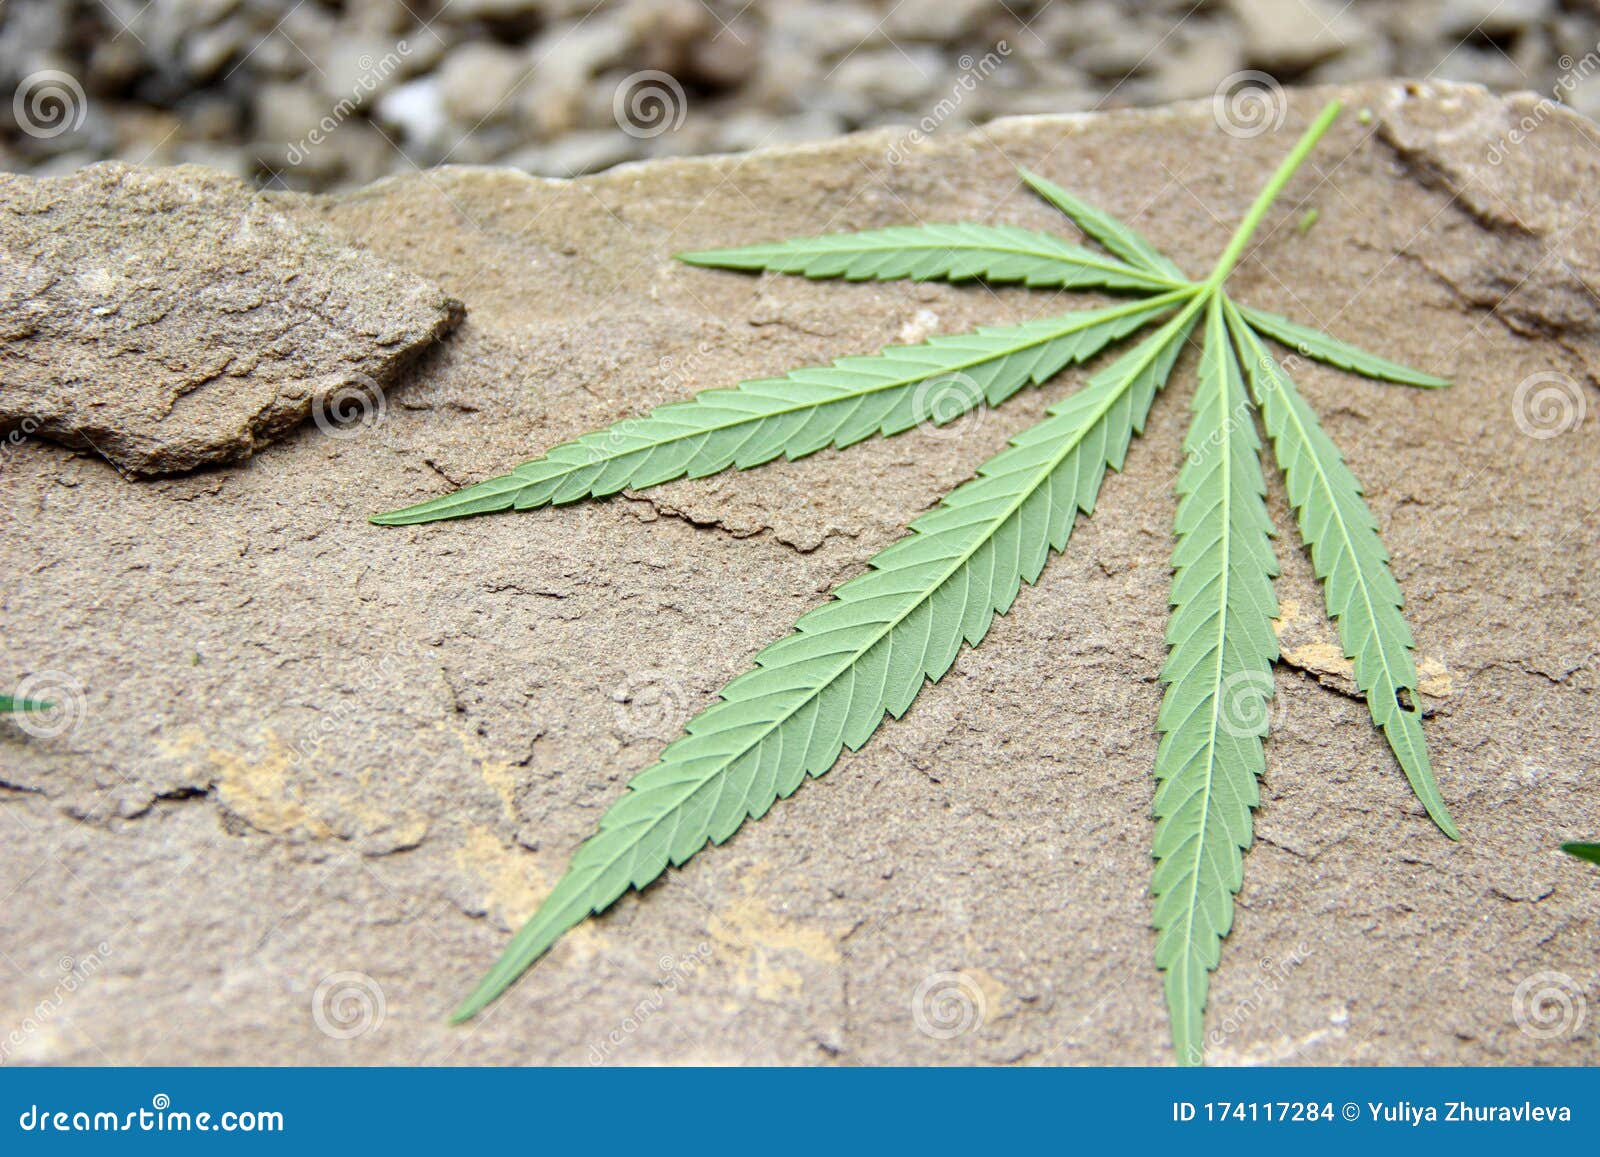 Лечебные травы марихуаны в каких странах лигалайз марихуаны